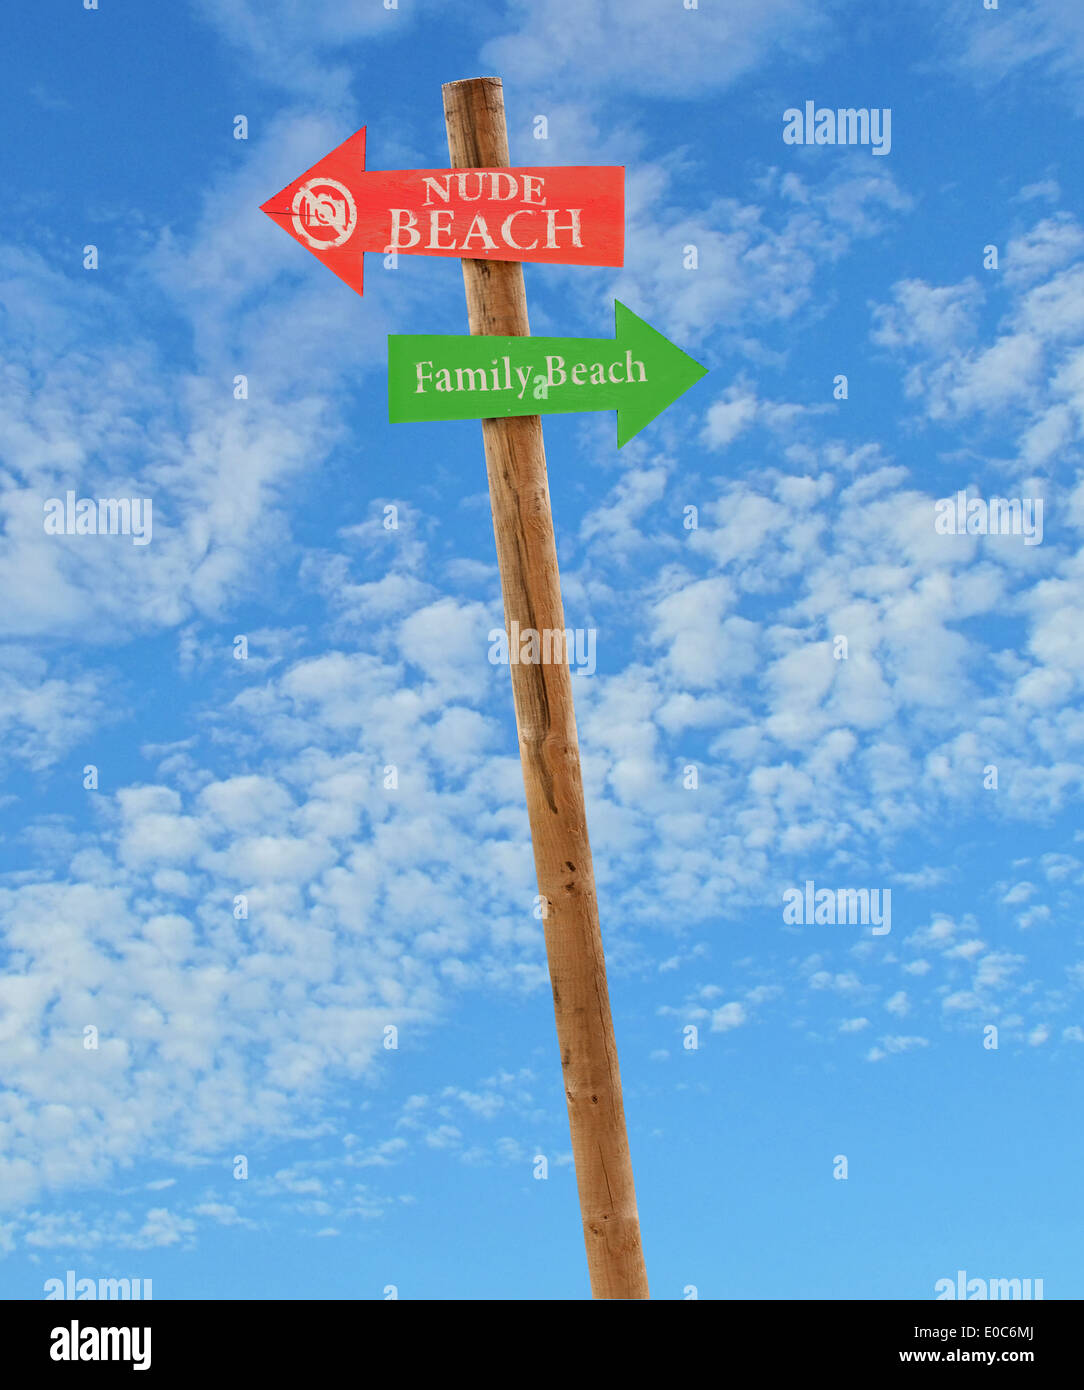 Flèche en bois Panneaux de direction vers le nu et plages familiales contre un ciel bleu Banque D'Images